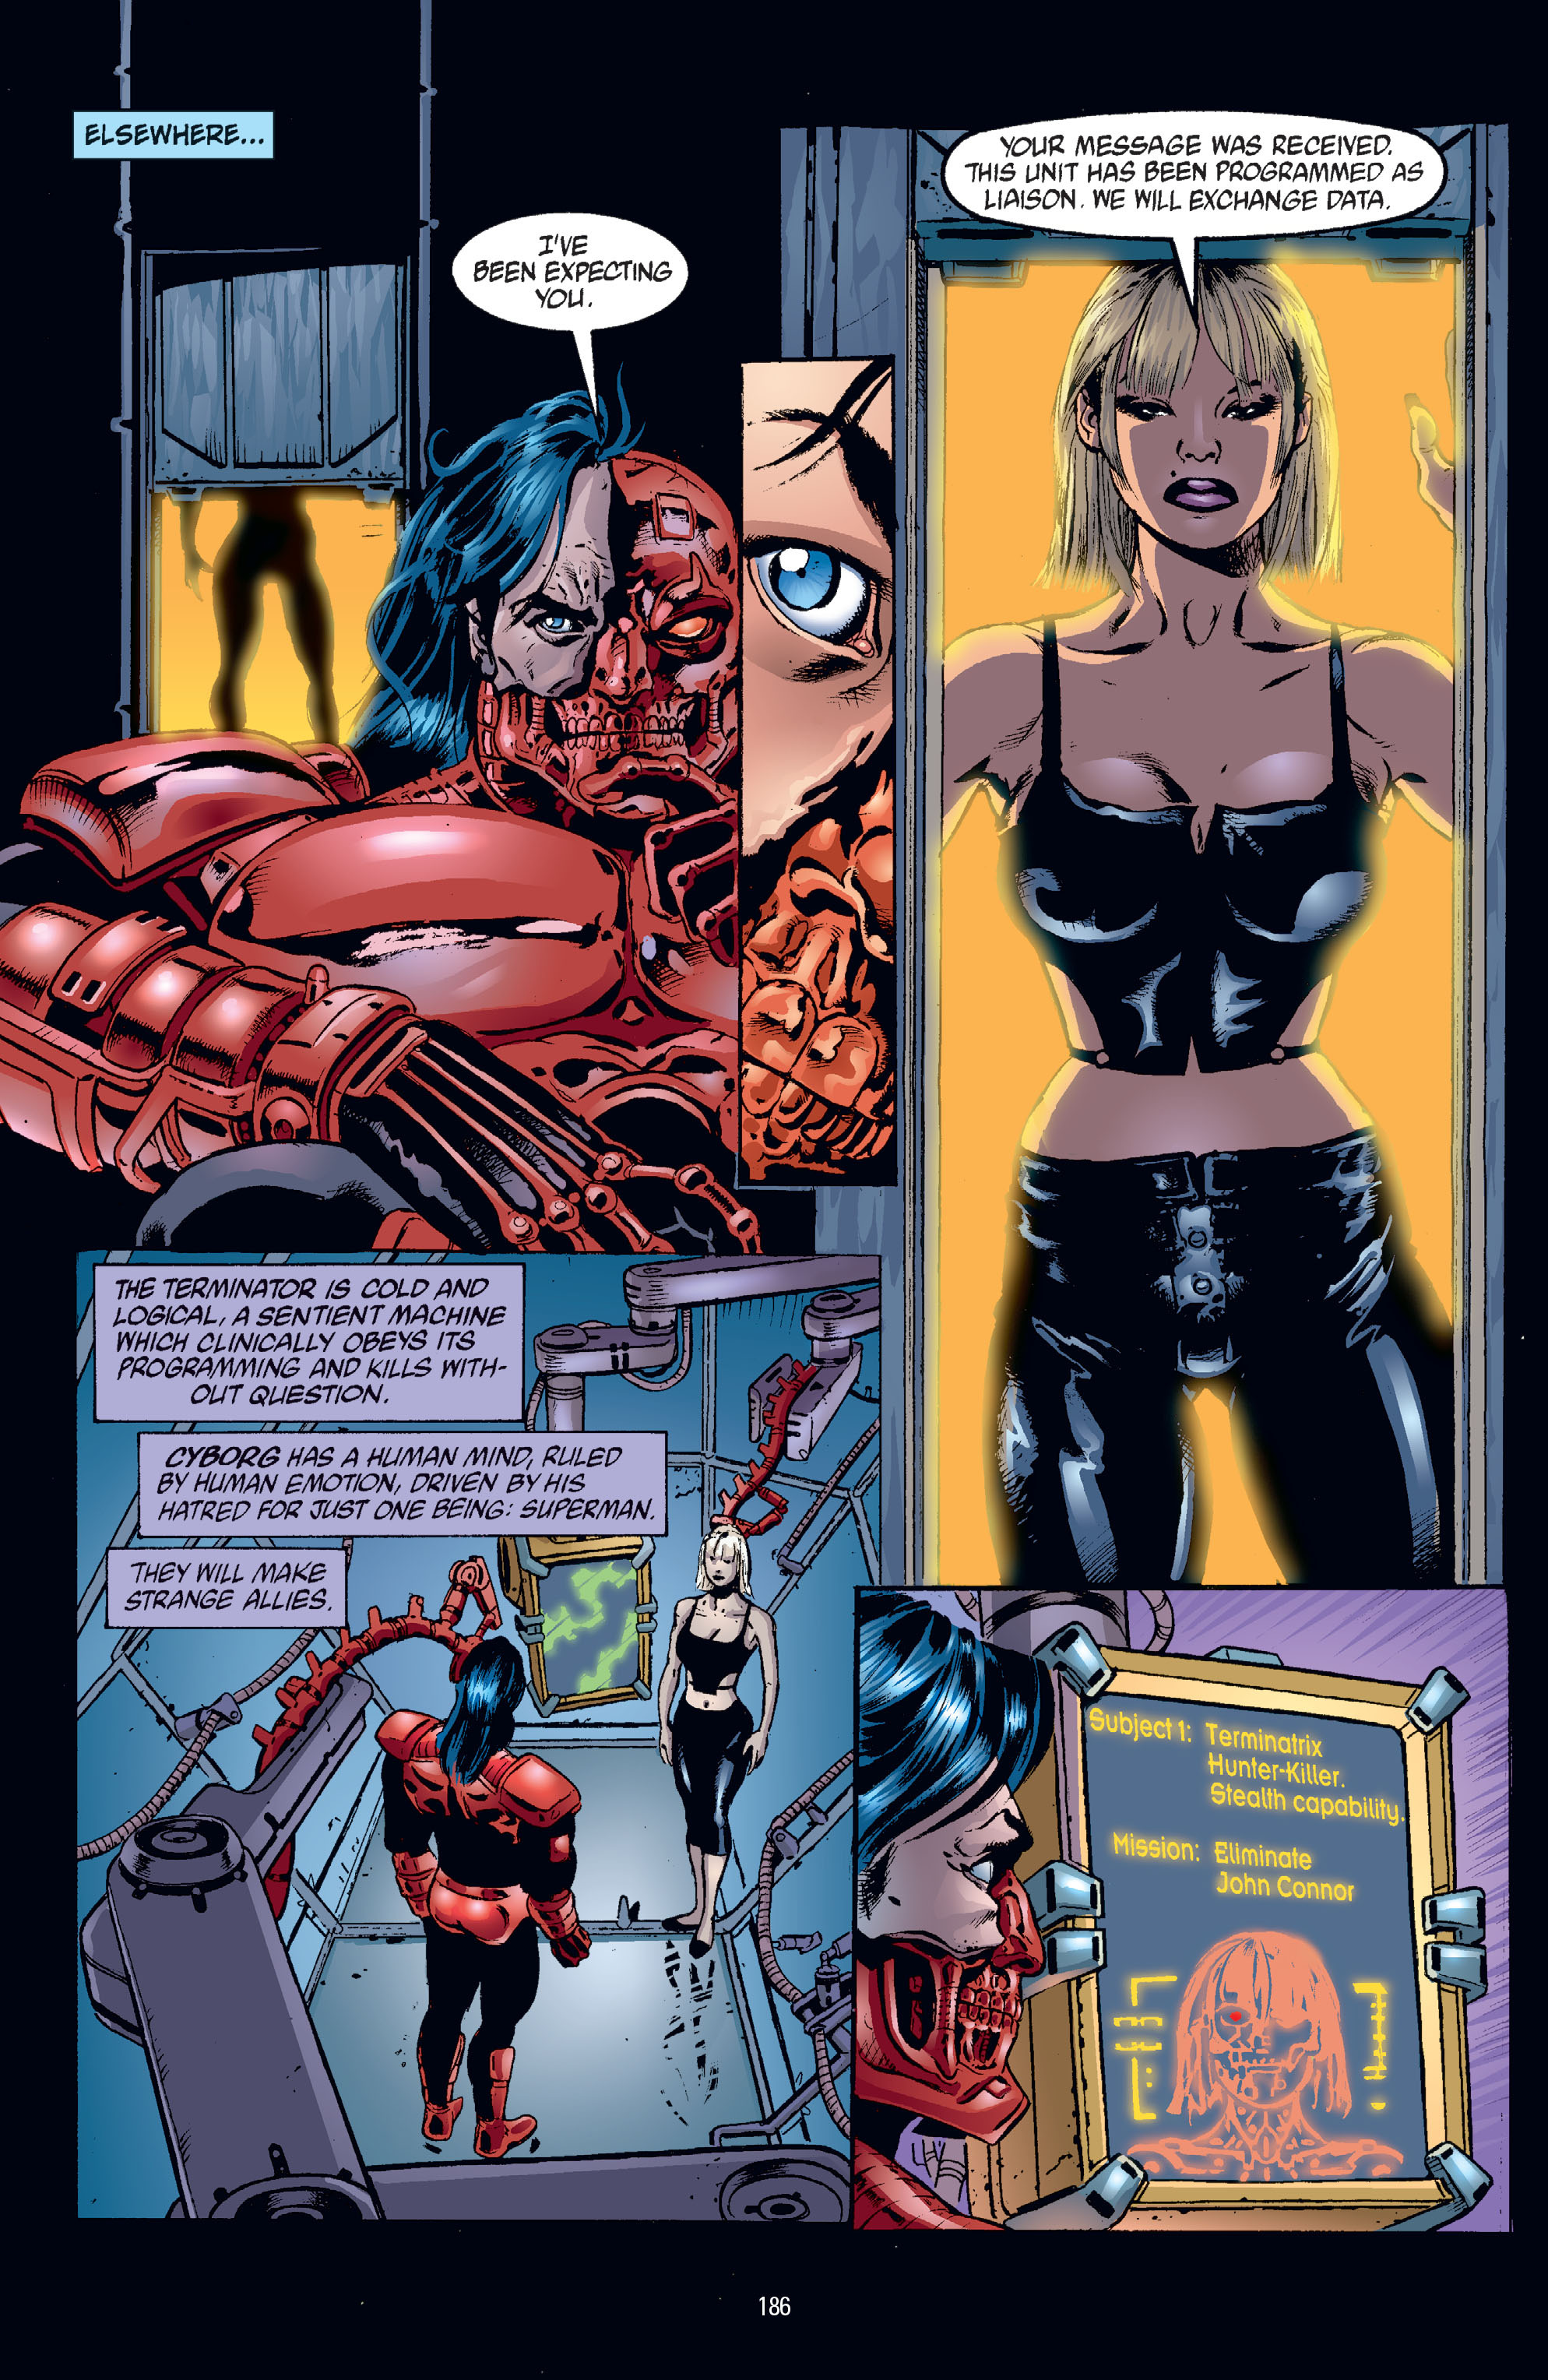 DC Comics/Dark Horse Comics: Justice League Full #1 - English 182